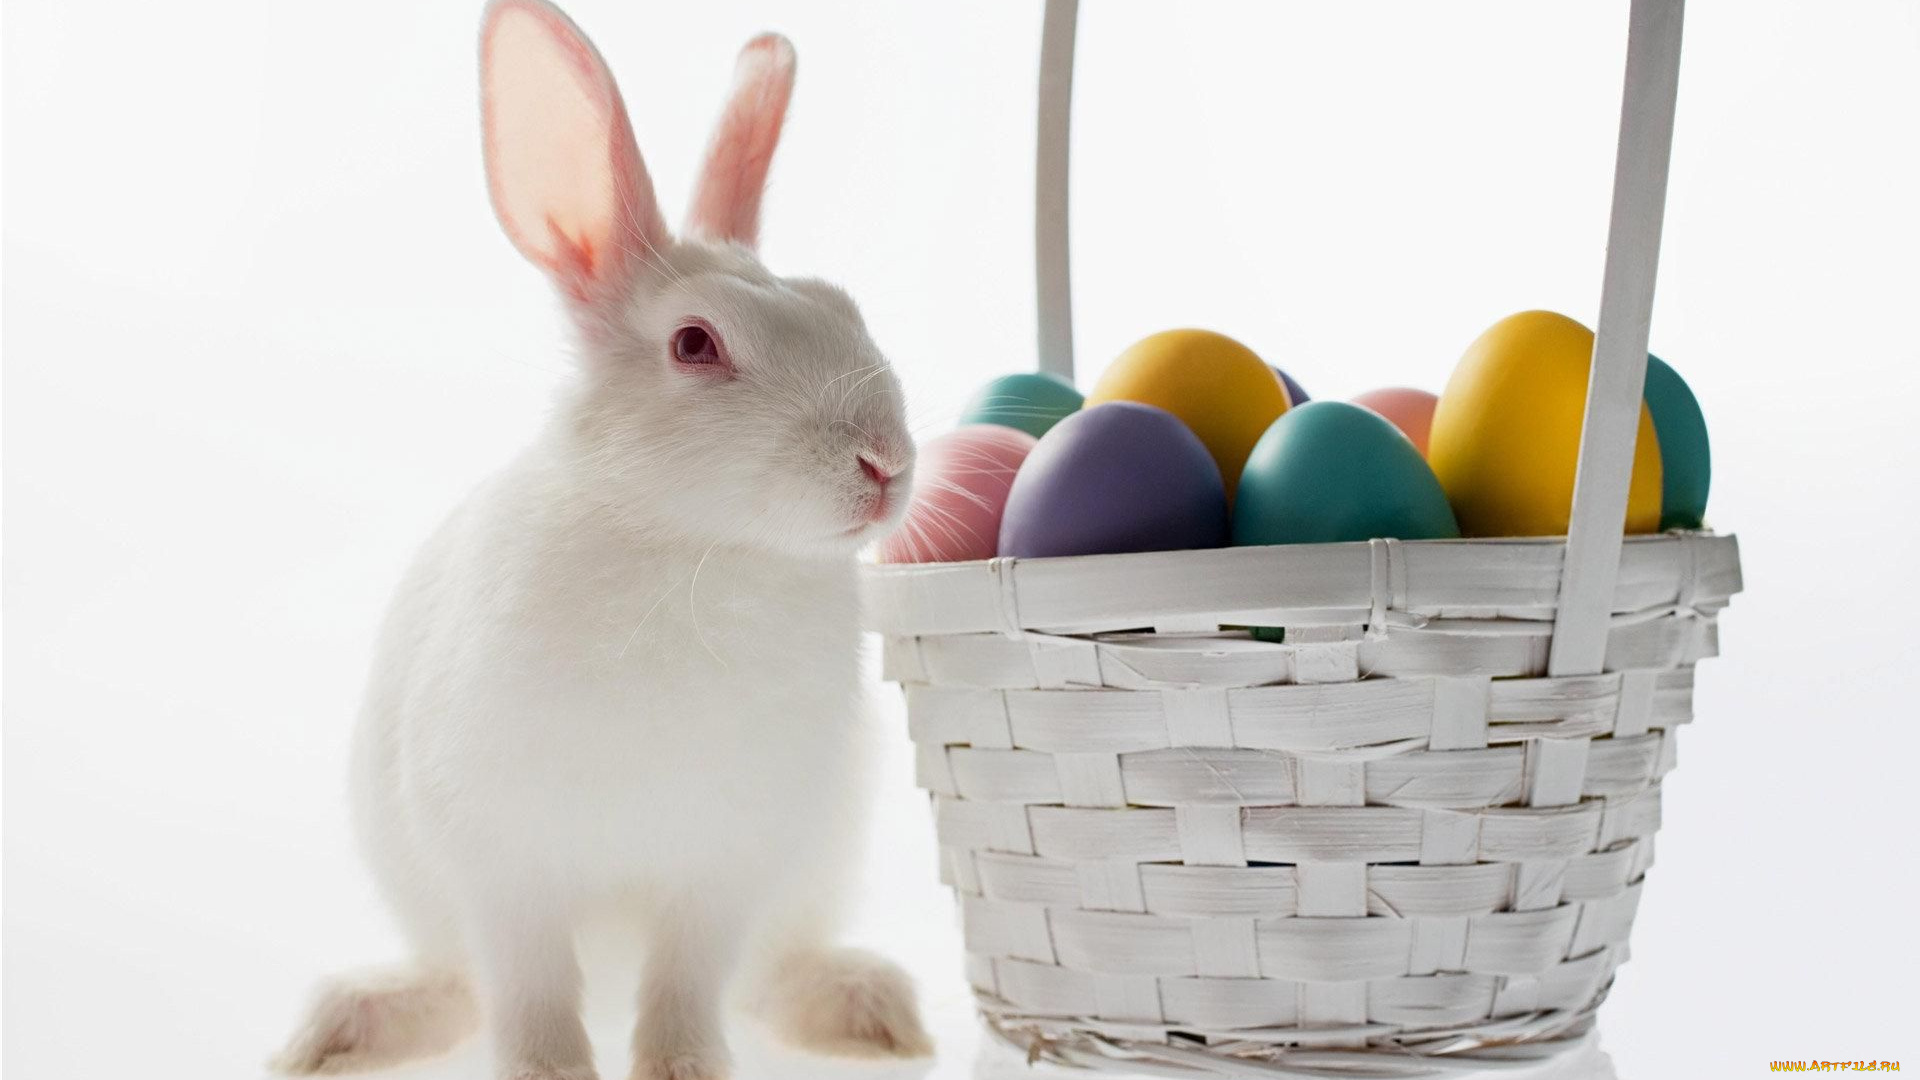 животные, кролики, зайцы, крашенки, корзина, пасхальные, яйца, кролик